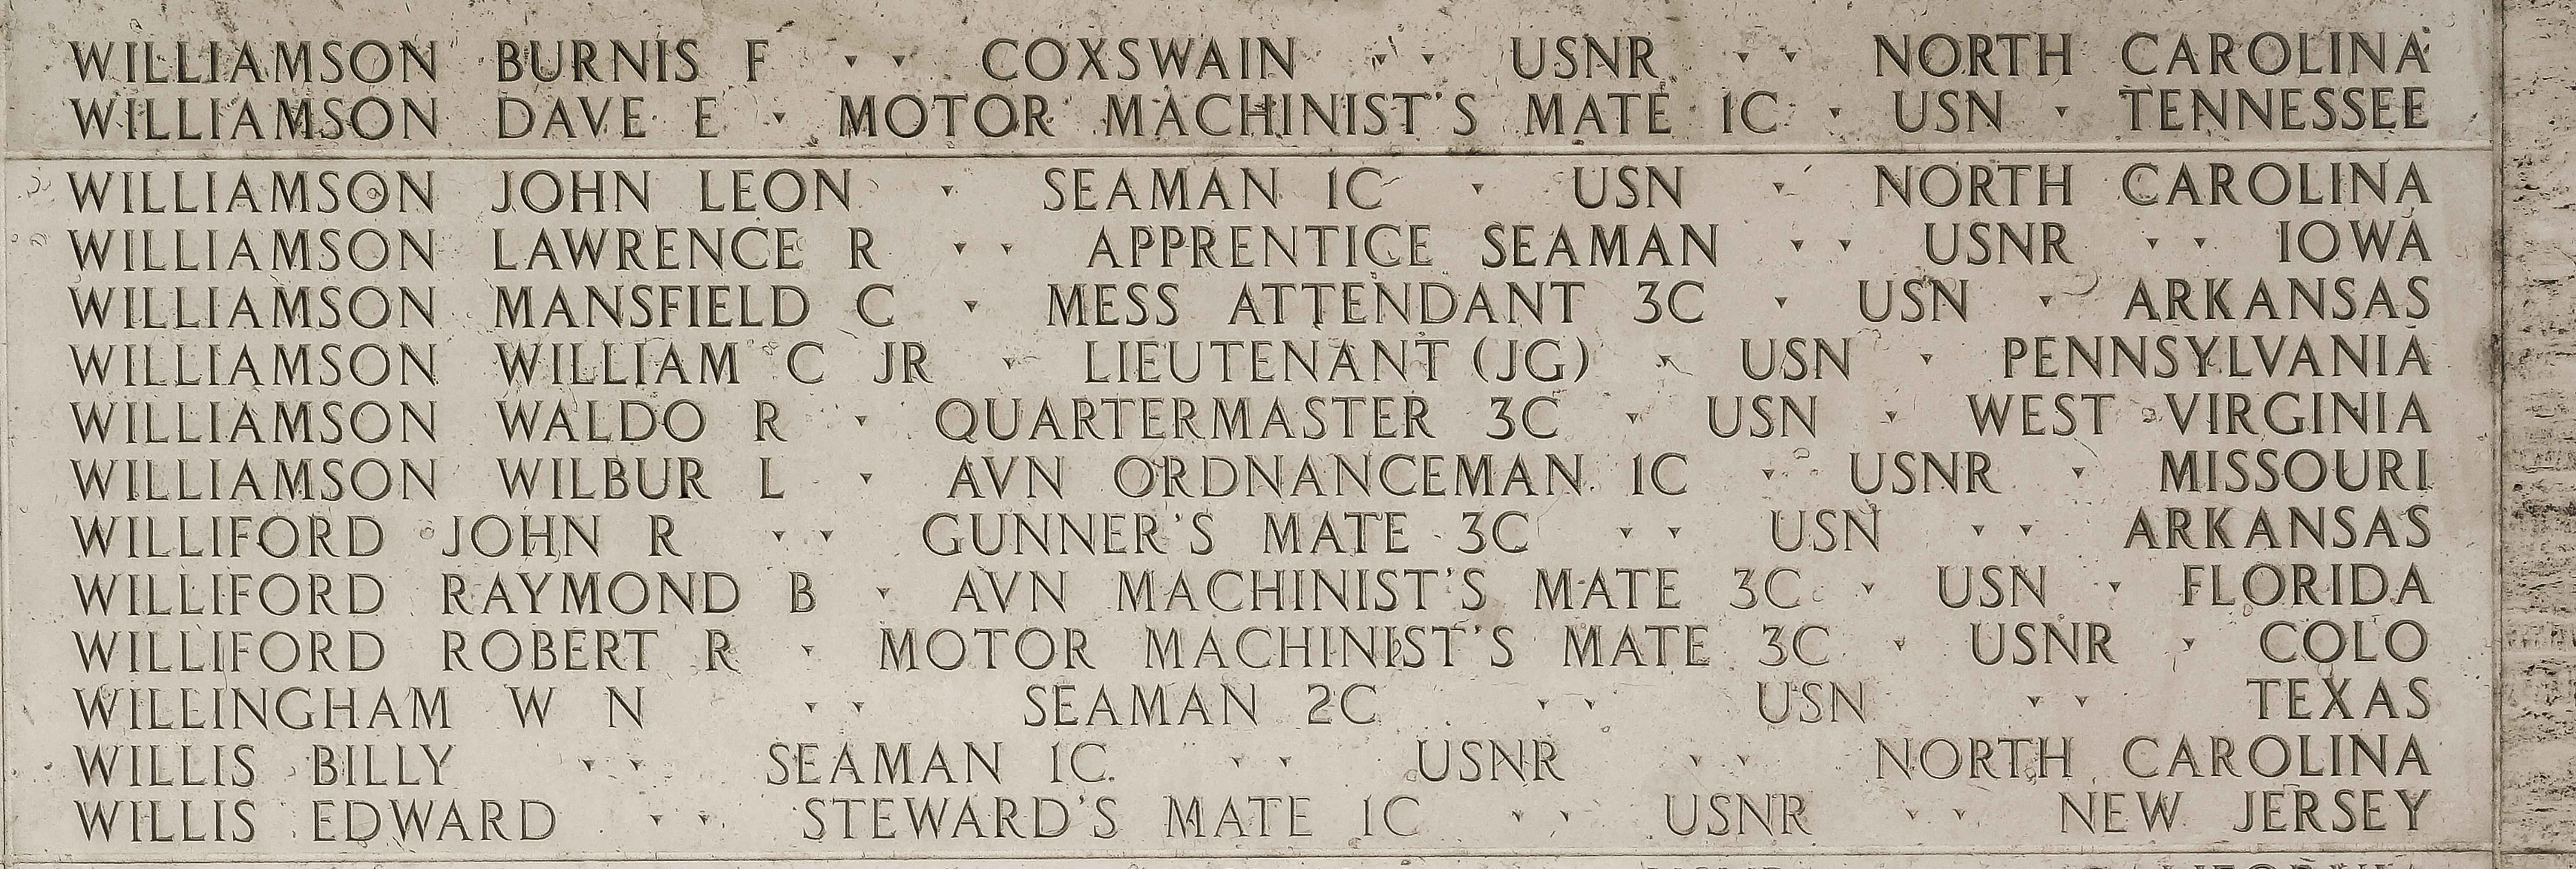 Lawrence R. Williamson, Apprentice Seaman